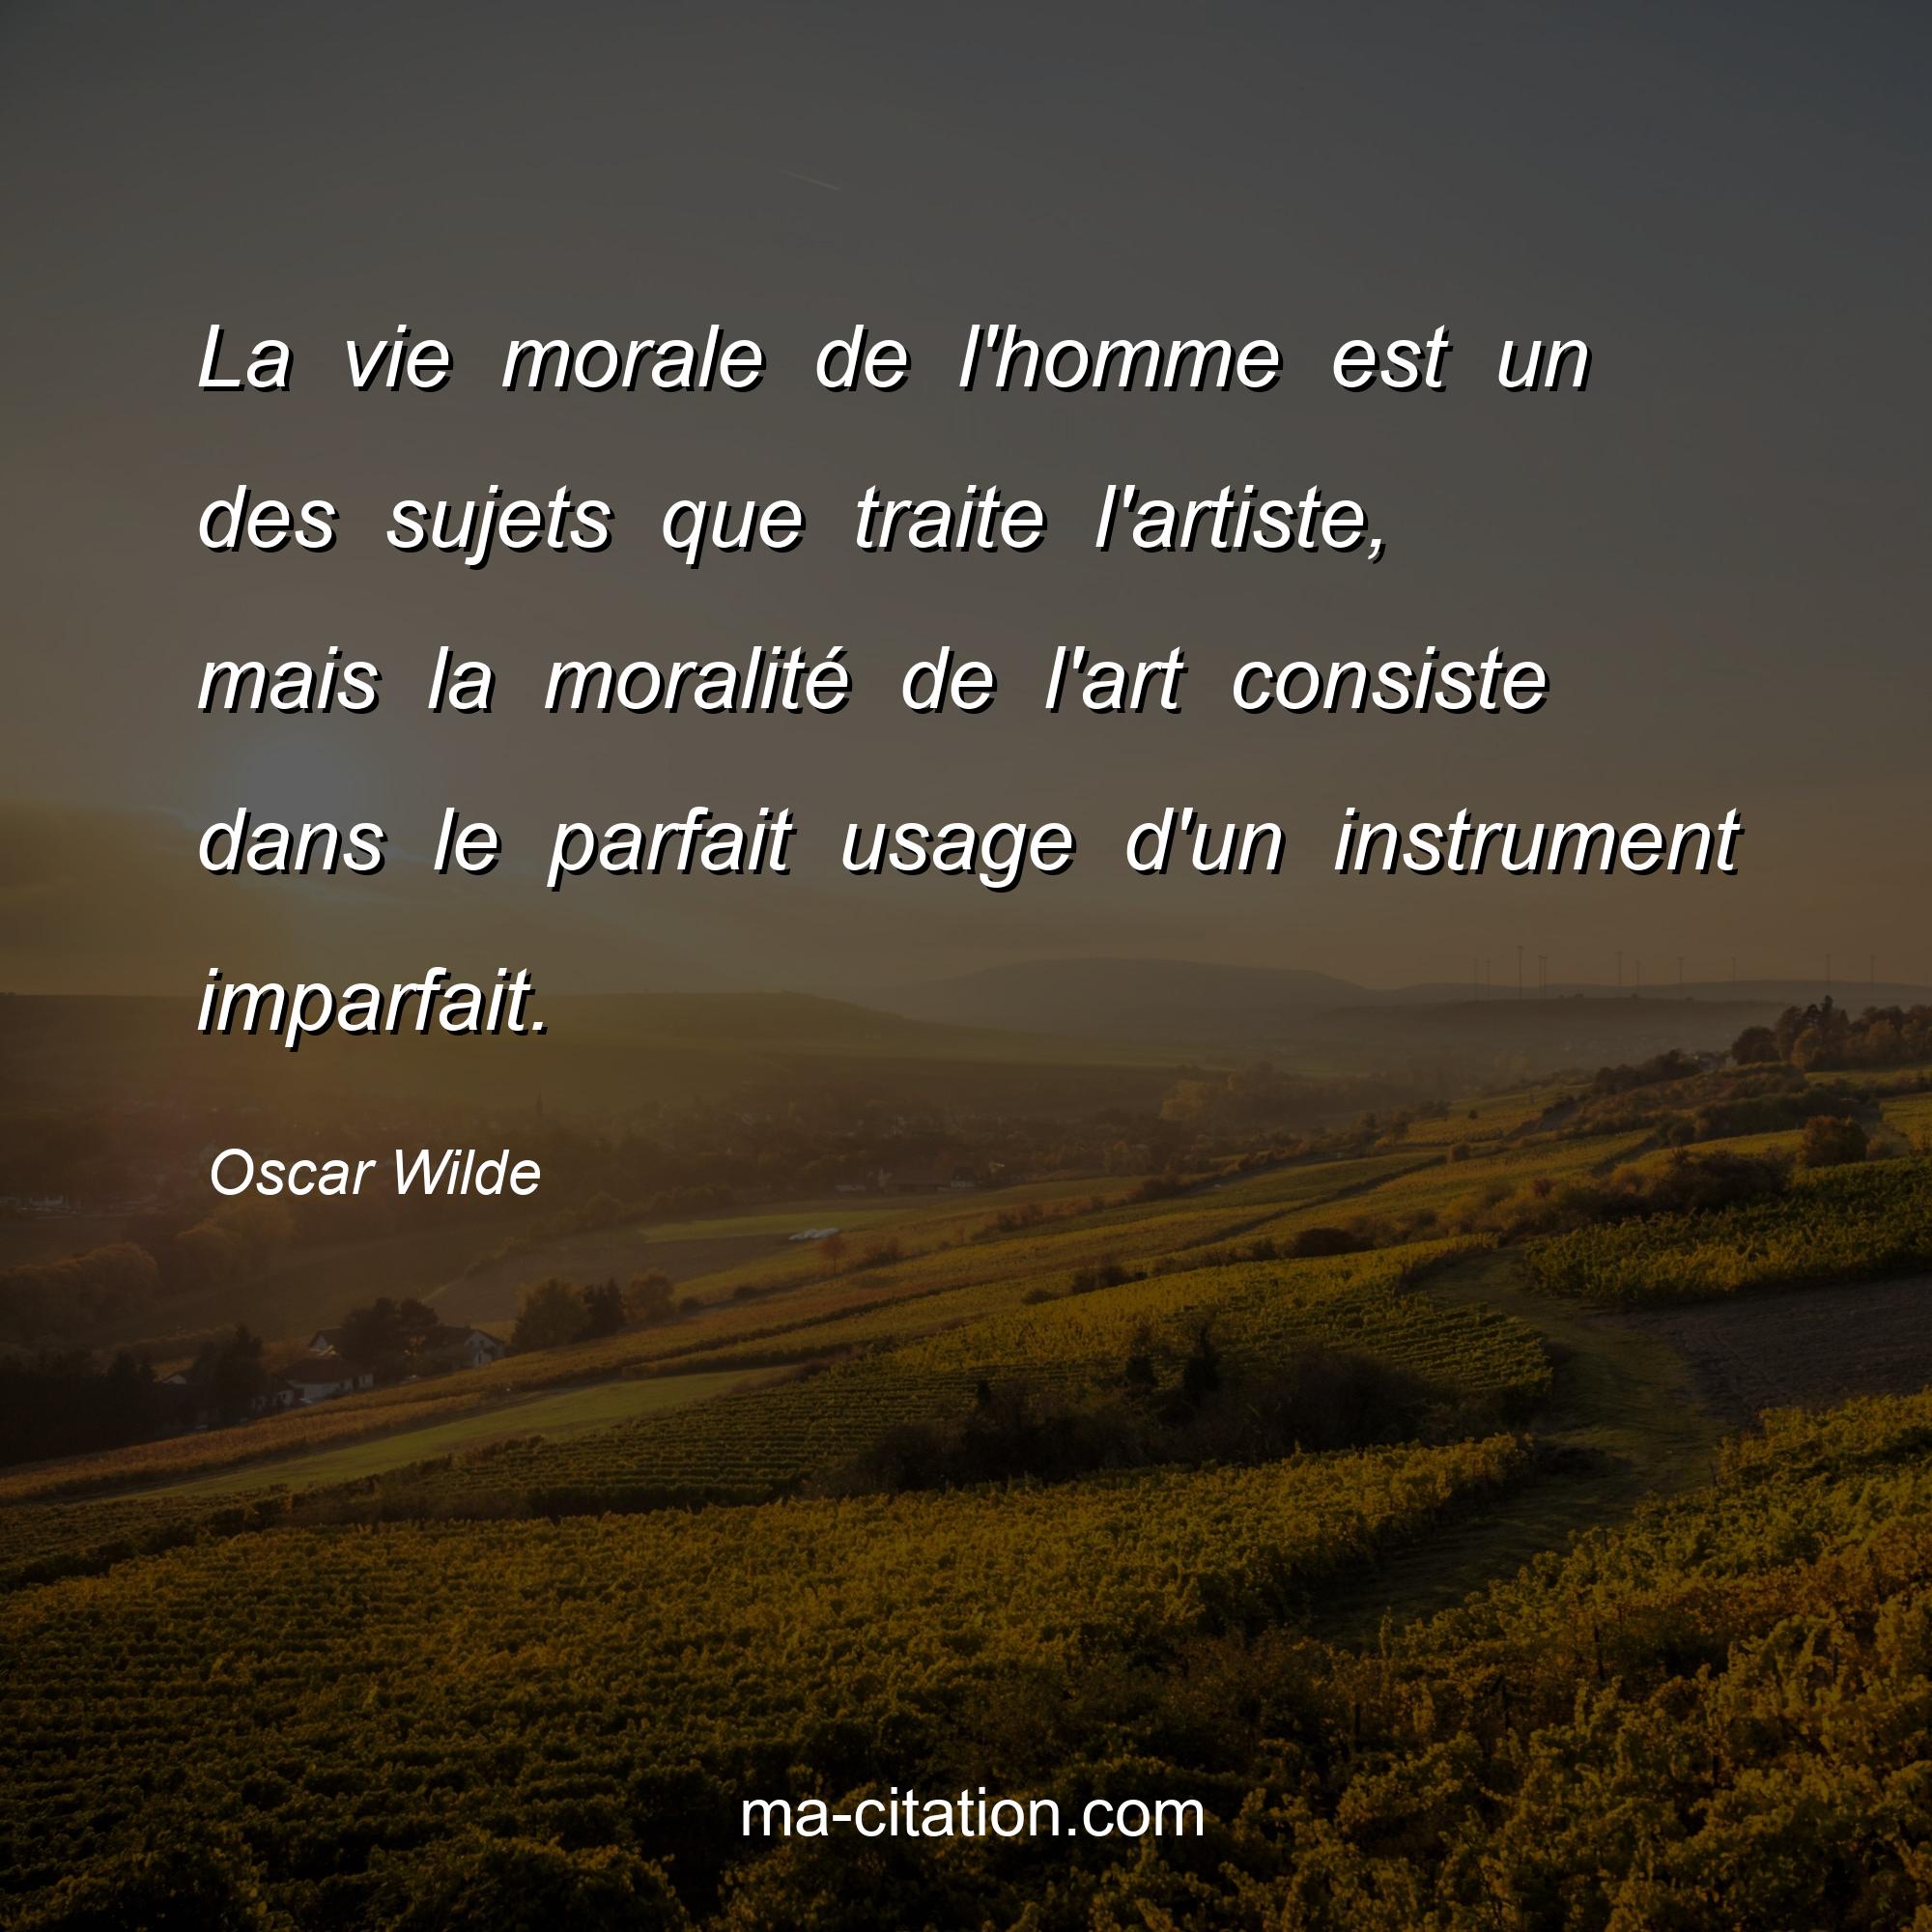 Oscar Wilde : La vie morale de l'homme est un des sujets que traite l'artiste, mais la moralité de l'art consiste dans le parfait usage d'un instrument imparfait.